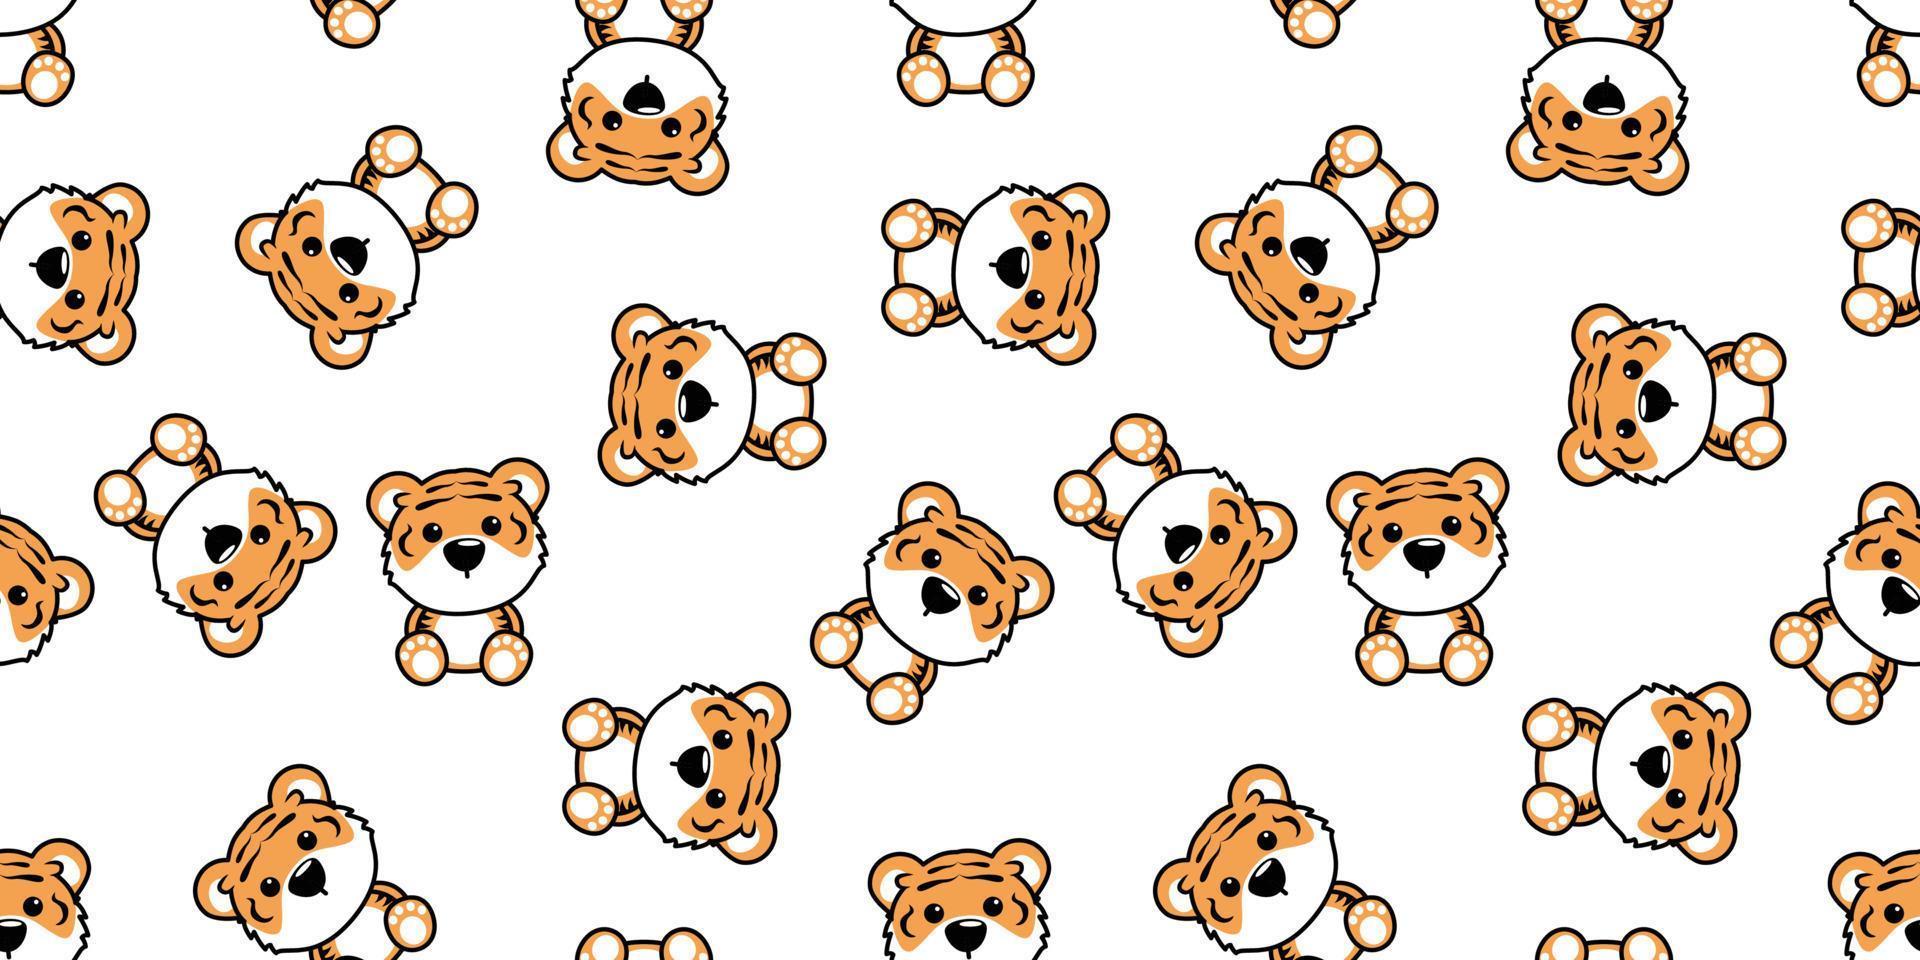 Cute tiger cartoon seamless pattern, vector illustration